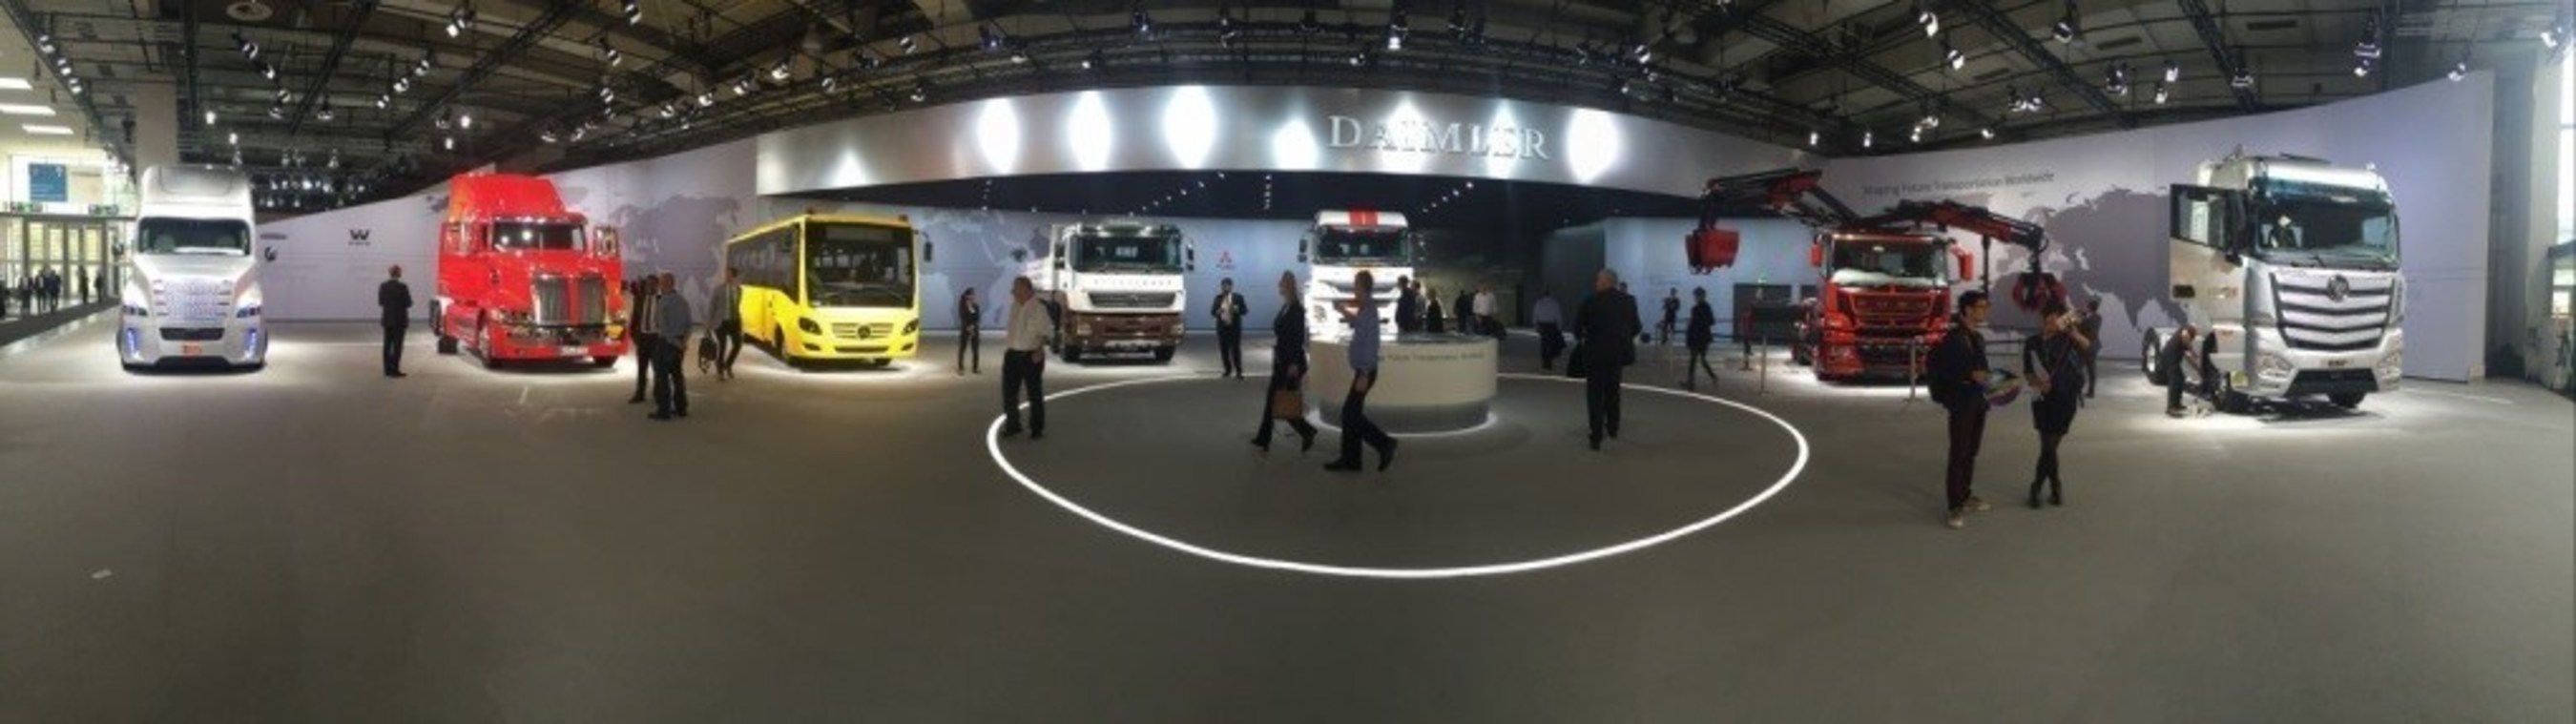 Daimler Booth Panorama